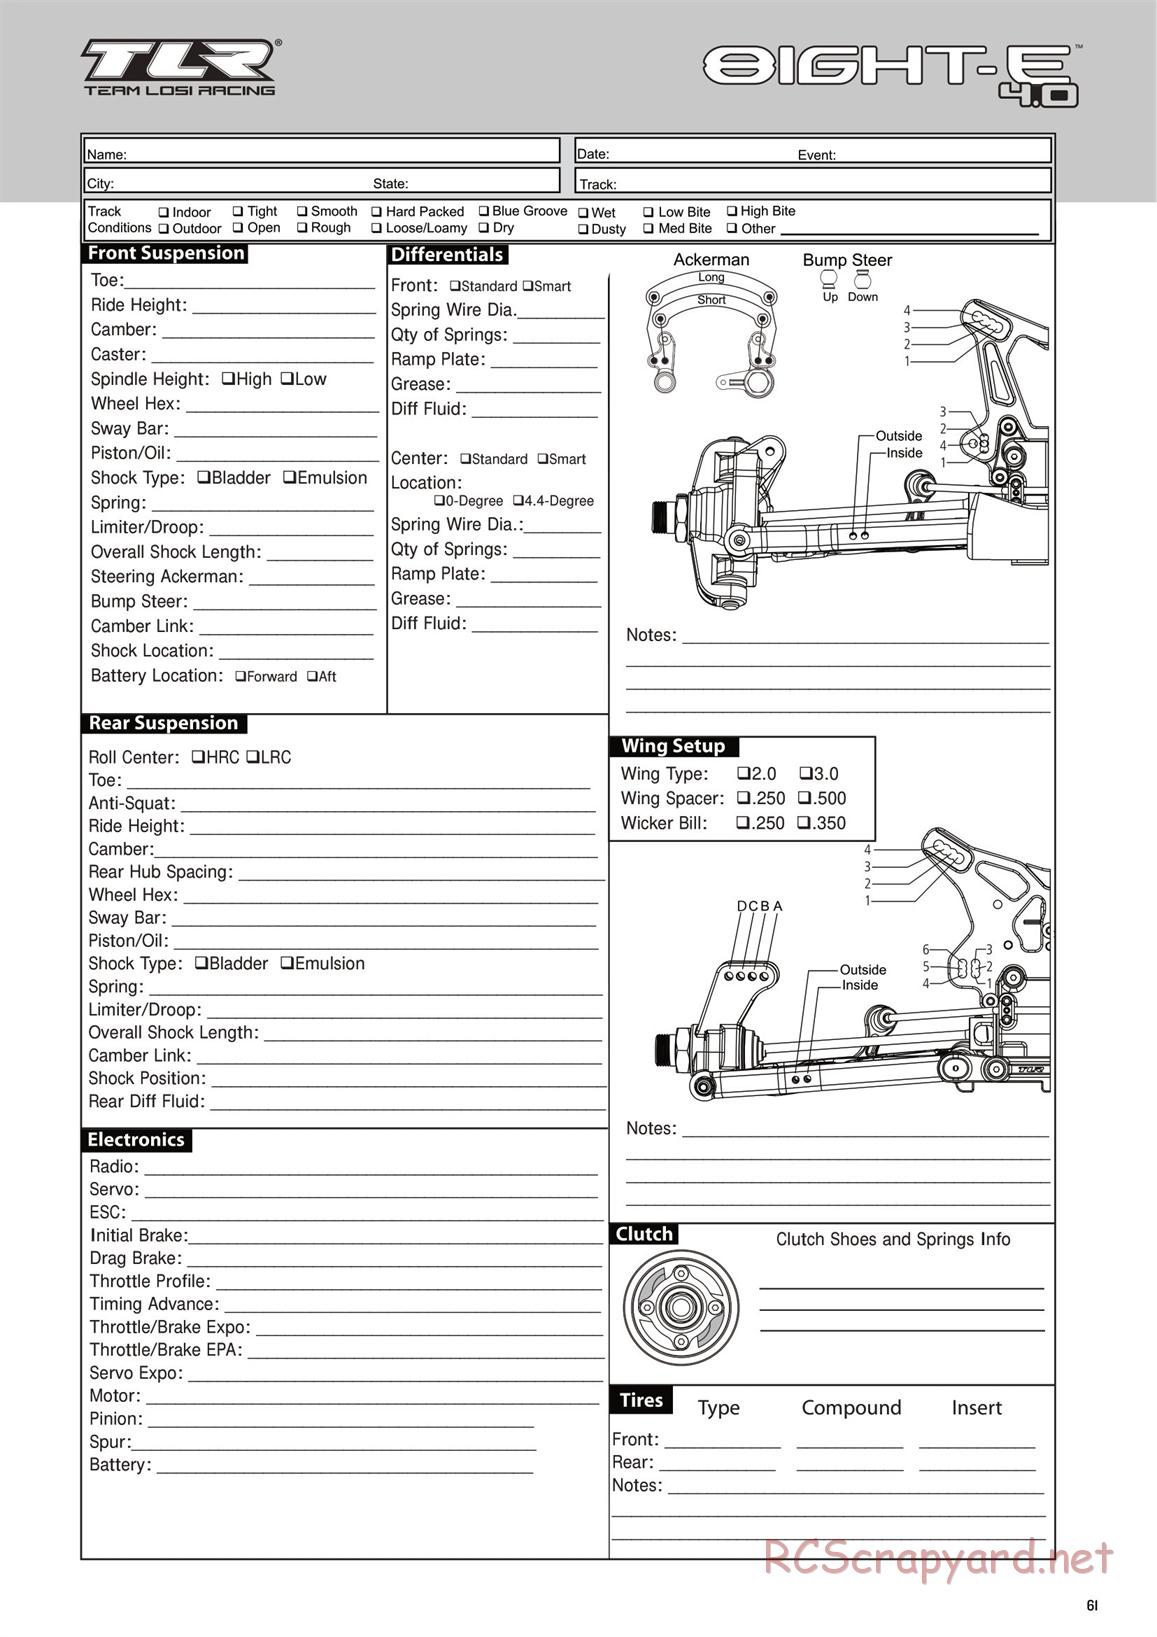 Team Losi - 8ight-E 4.0 - Manual - Page 61